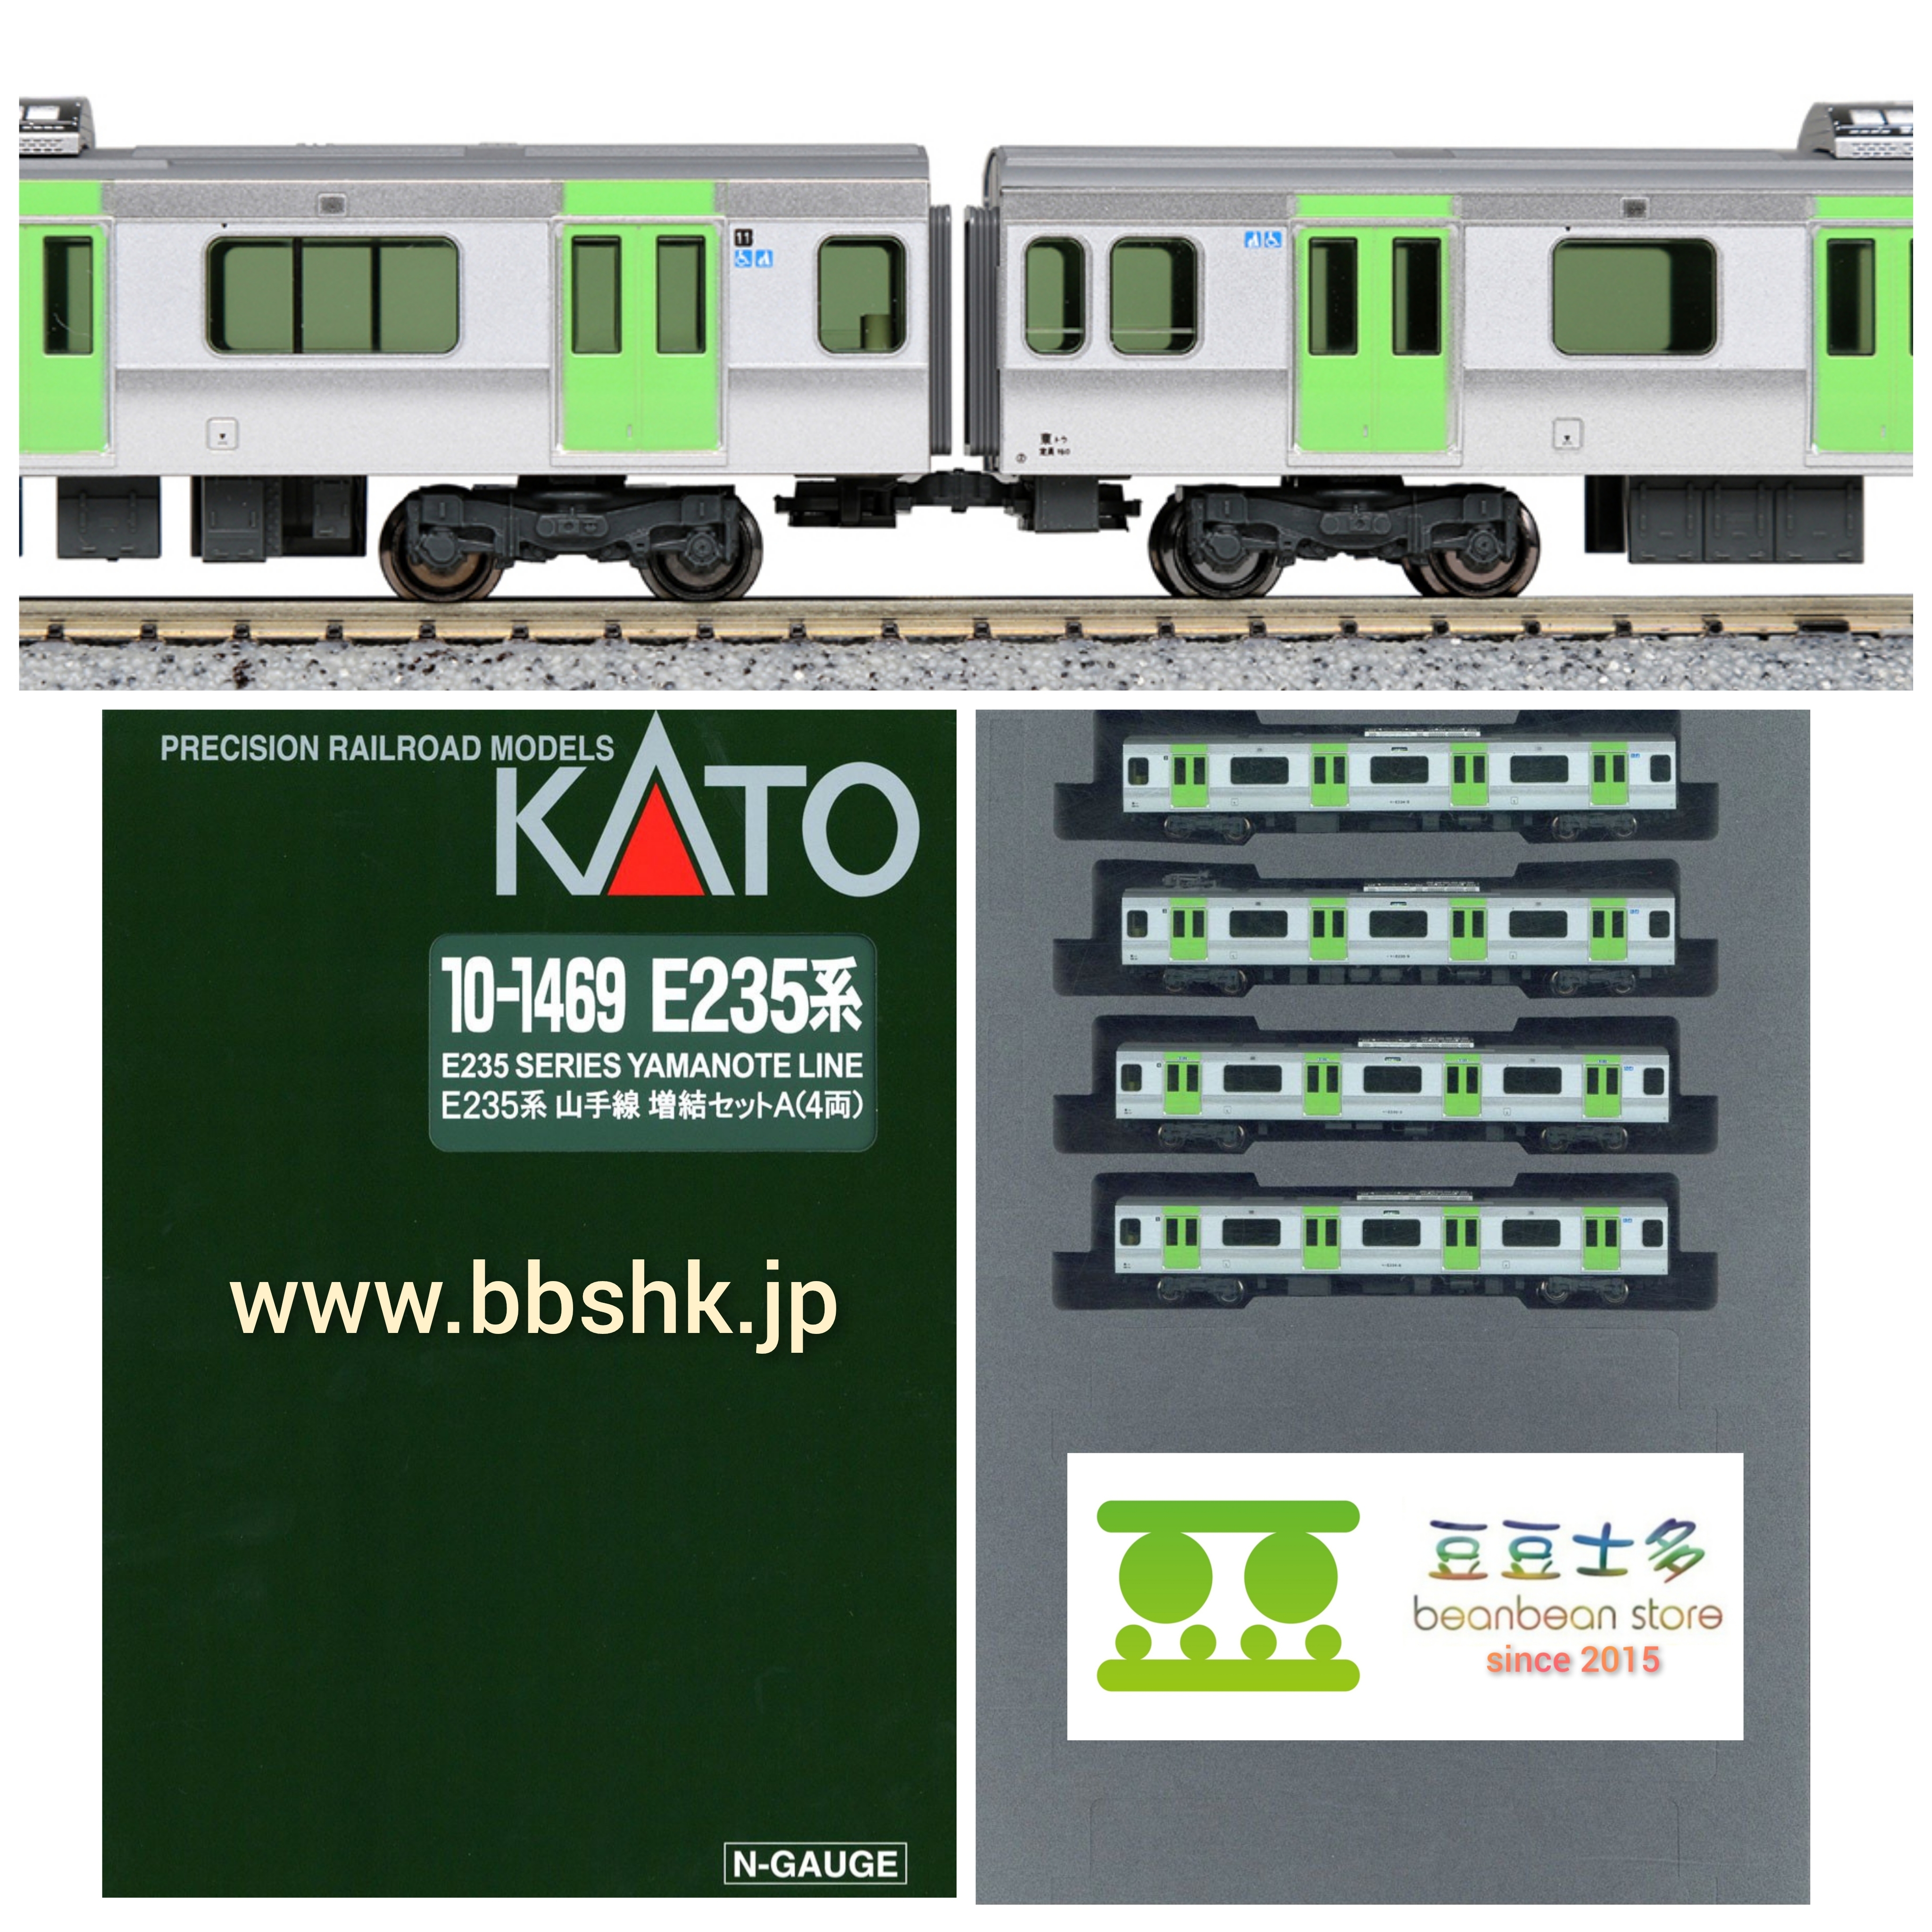 KATO 10-1469 E235系山手線(増結A・4両)